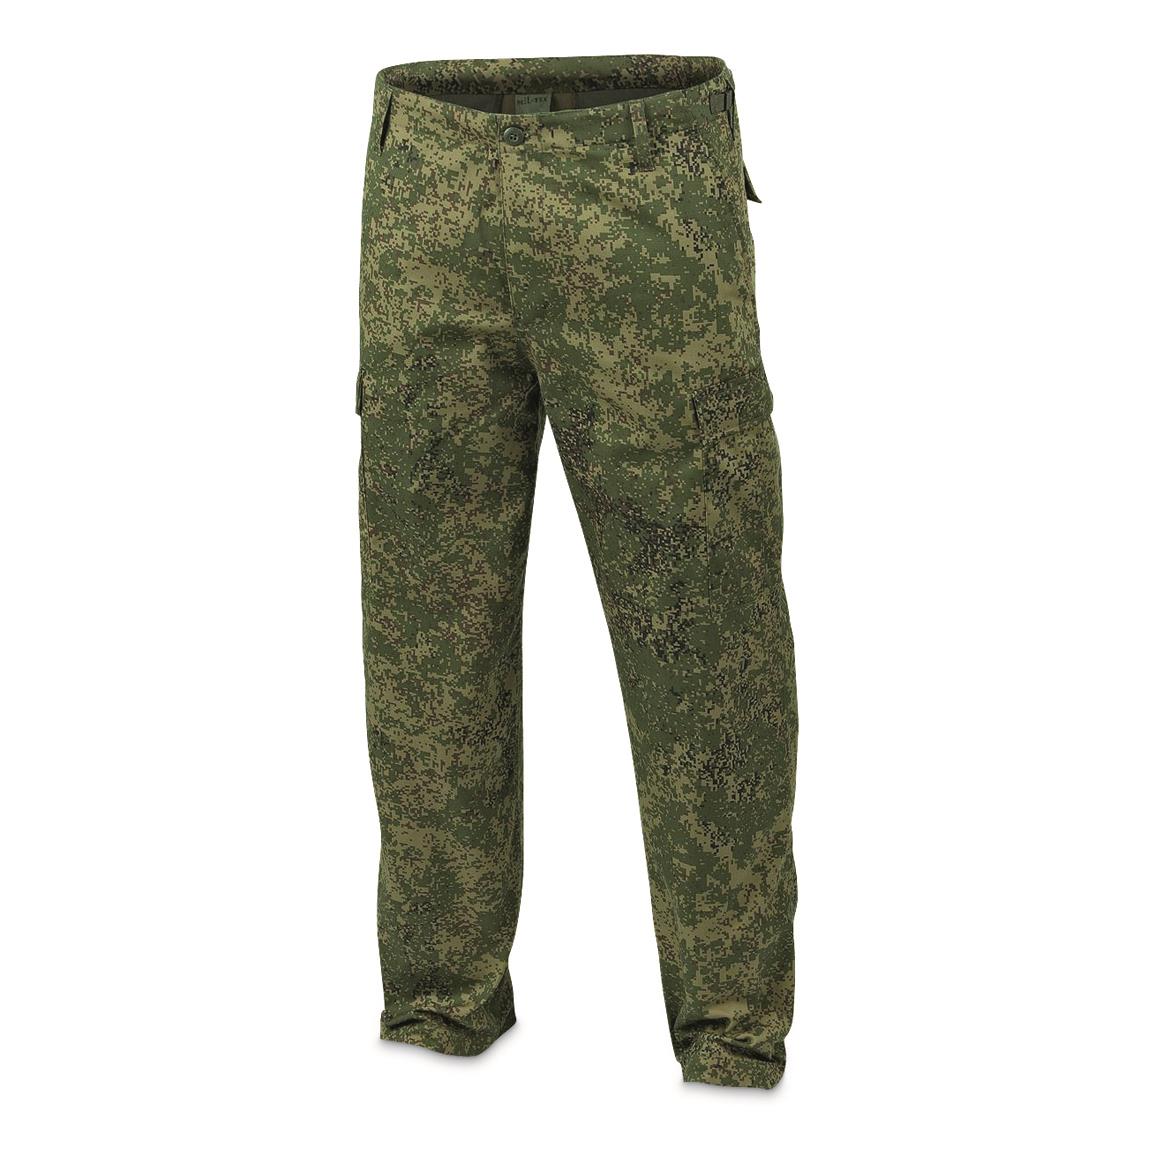 Mil-Tec BDU Ranger Combat Pants